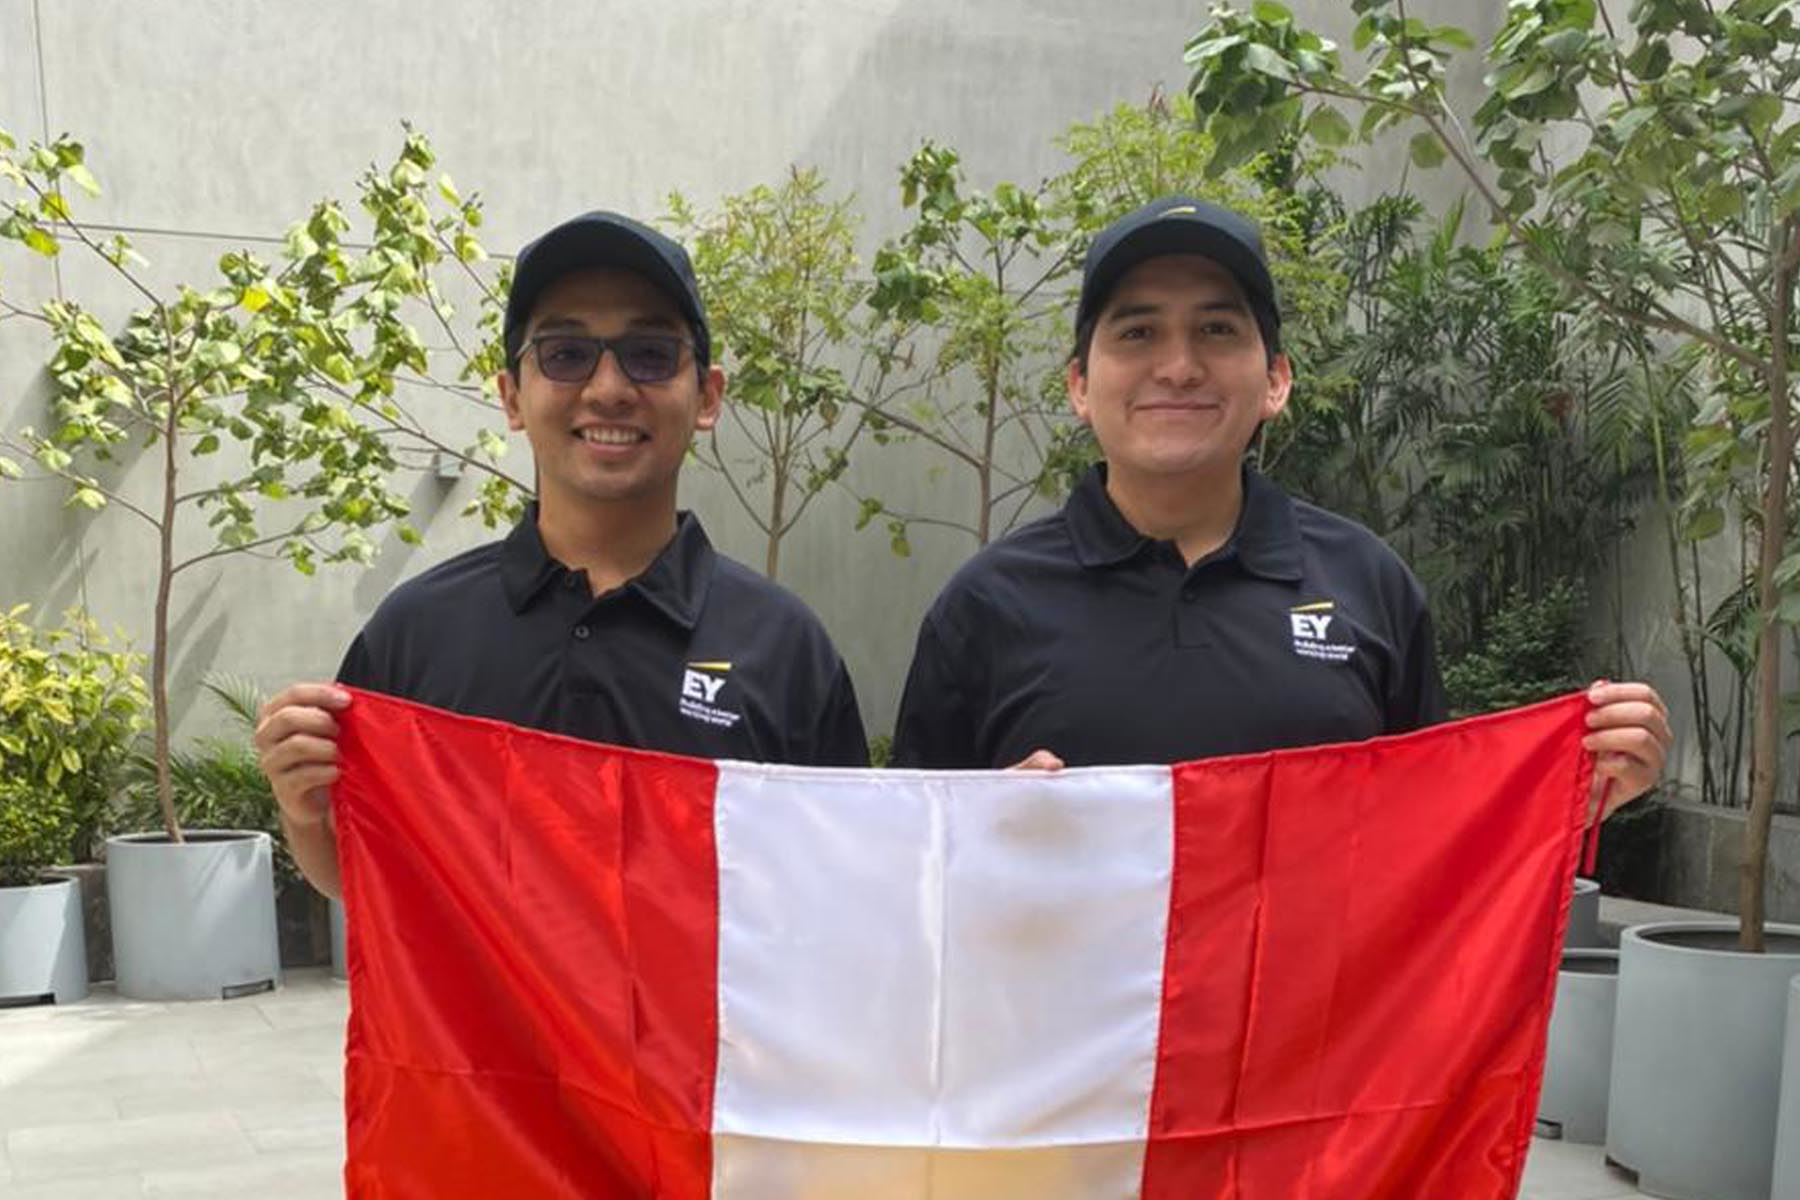 Los expertos en seguridad digital Cristian Luciano y Paulo Sarrín integran el equipo latinoamericano, que competirá contra otros seis equipos. Foto: EY Perú